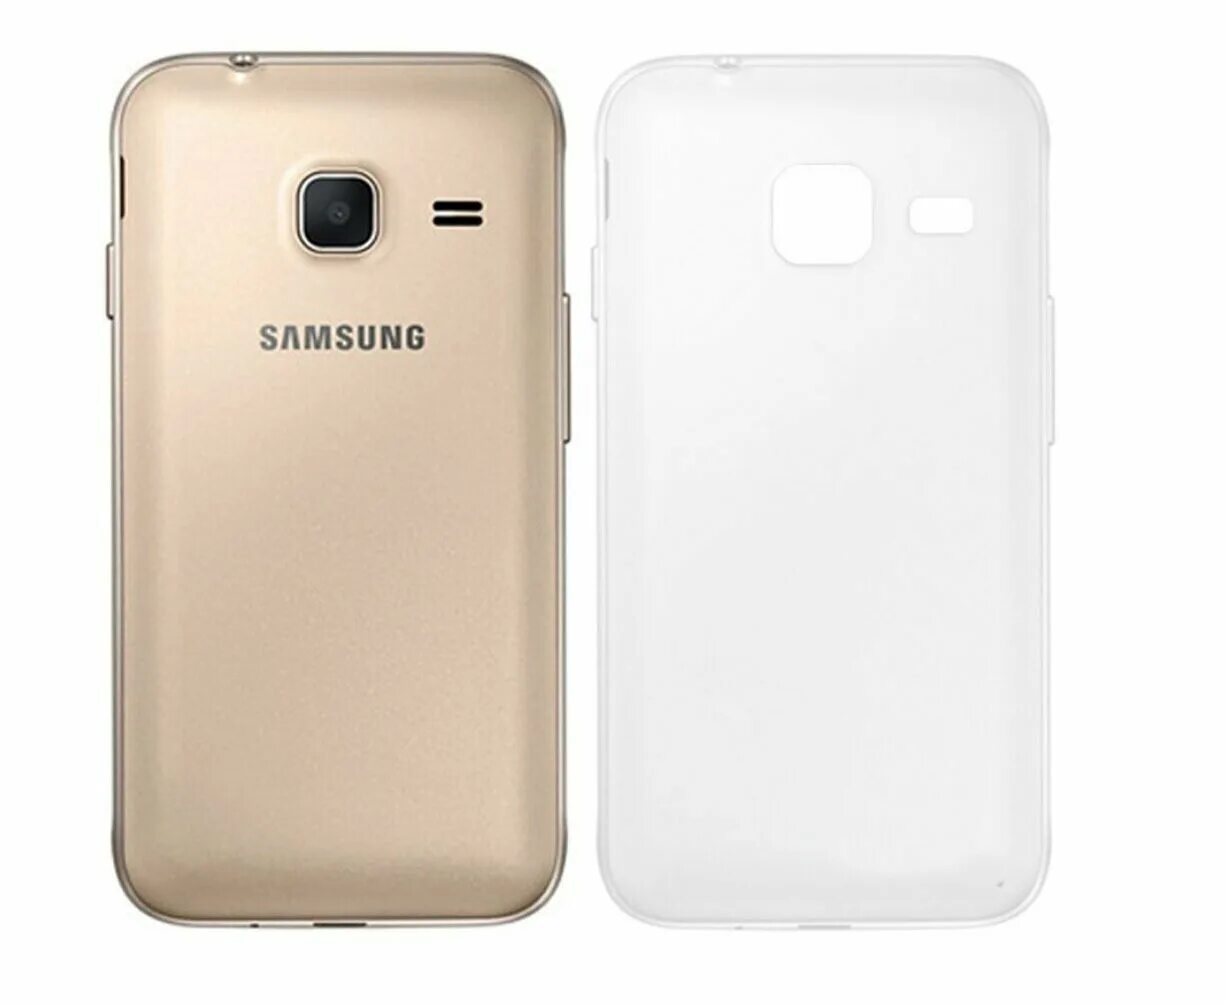 Samsung galaxy mini j105h. Samsung j1 Mini. Samsung j105. Самсунг мини j1. Samsung j105h DS.